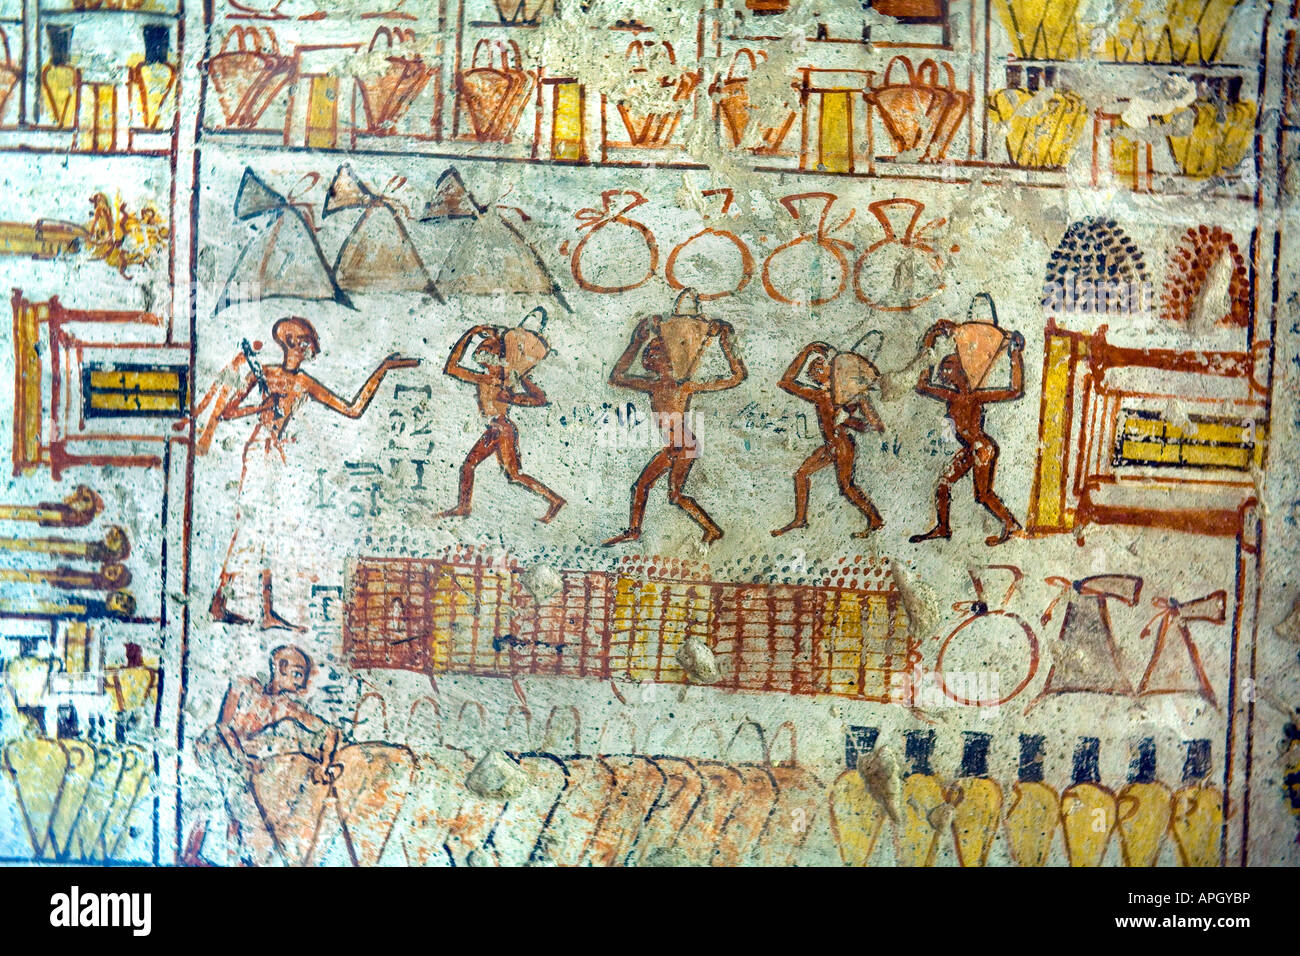 Peinture originale sur le mur de l'intérieur de la tombe de Neferrenpet sur les tombes des nobles. Egypte Louxor rive ouest. Banque D'Images